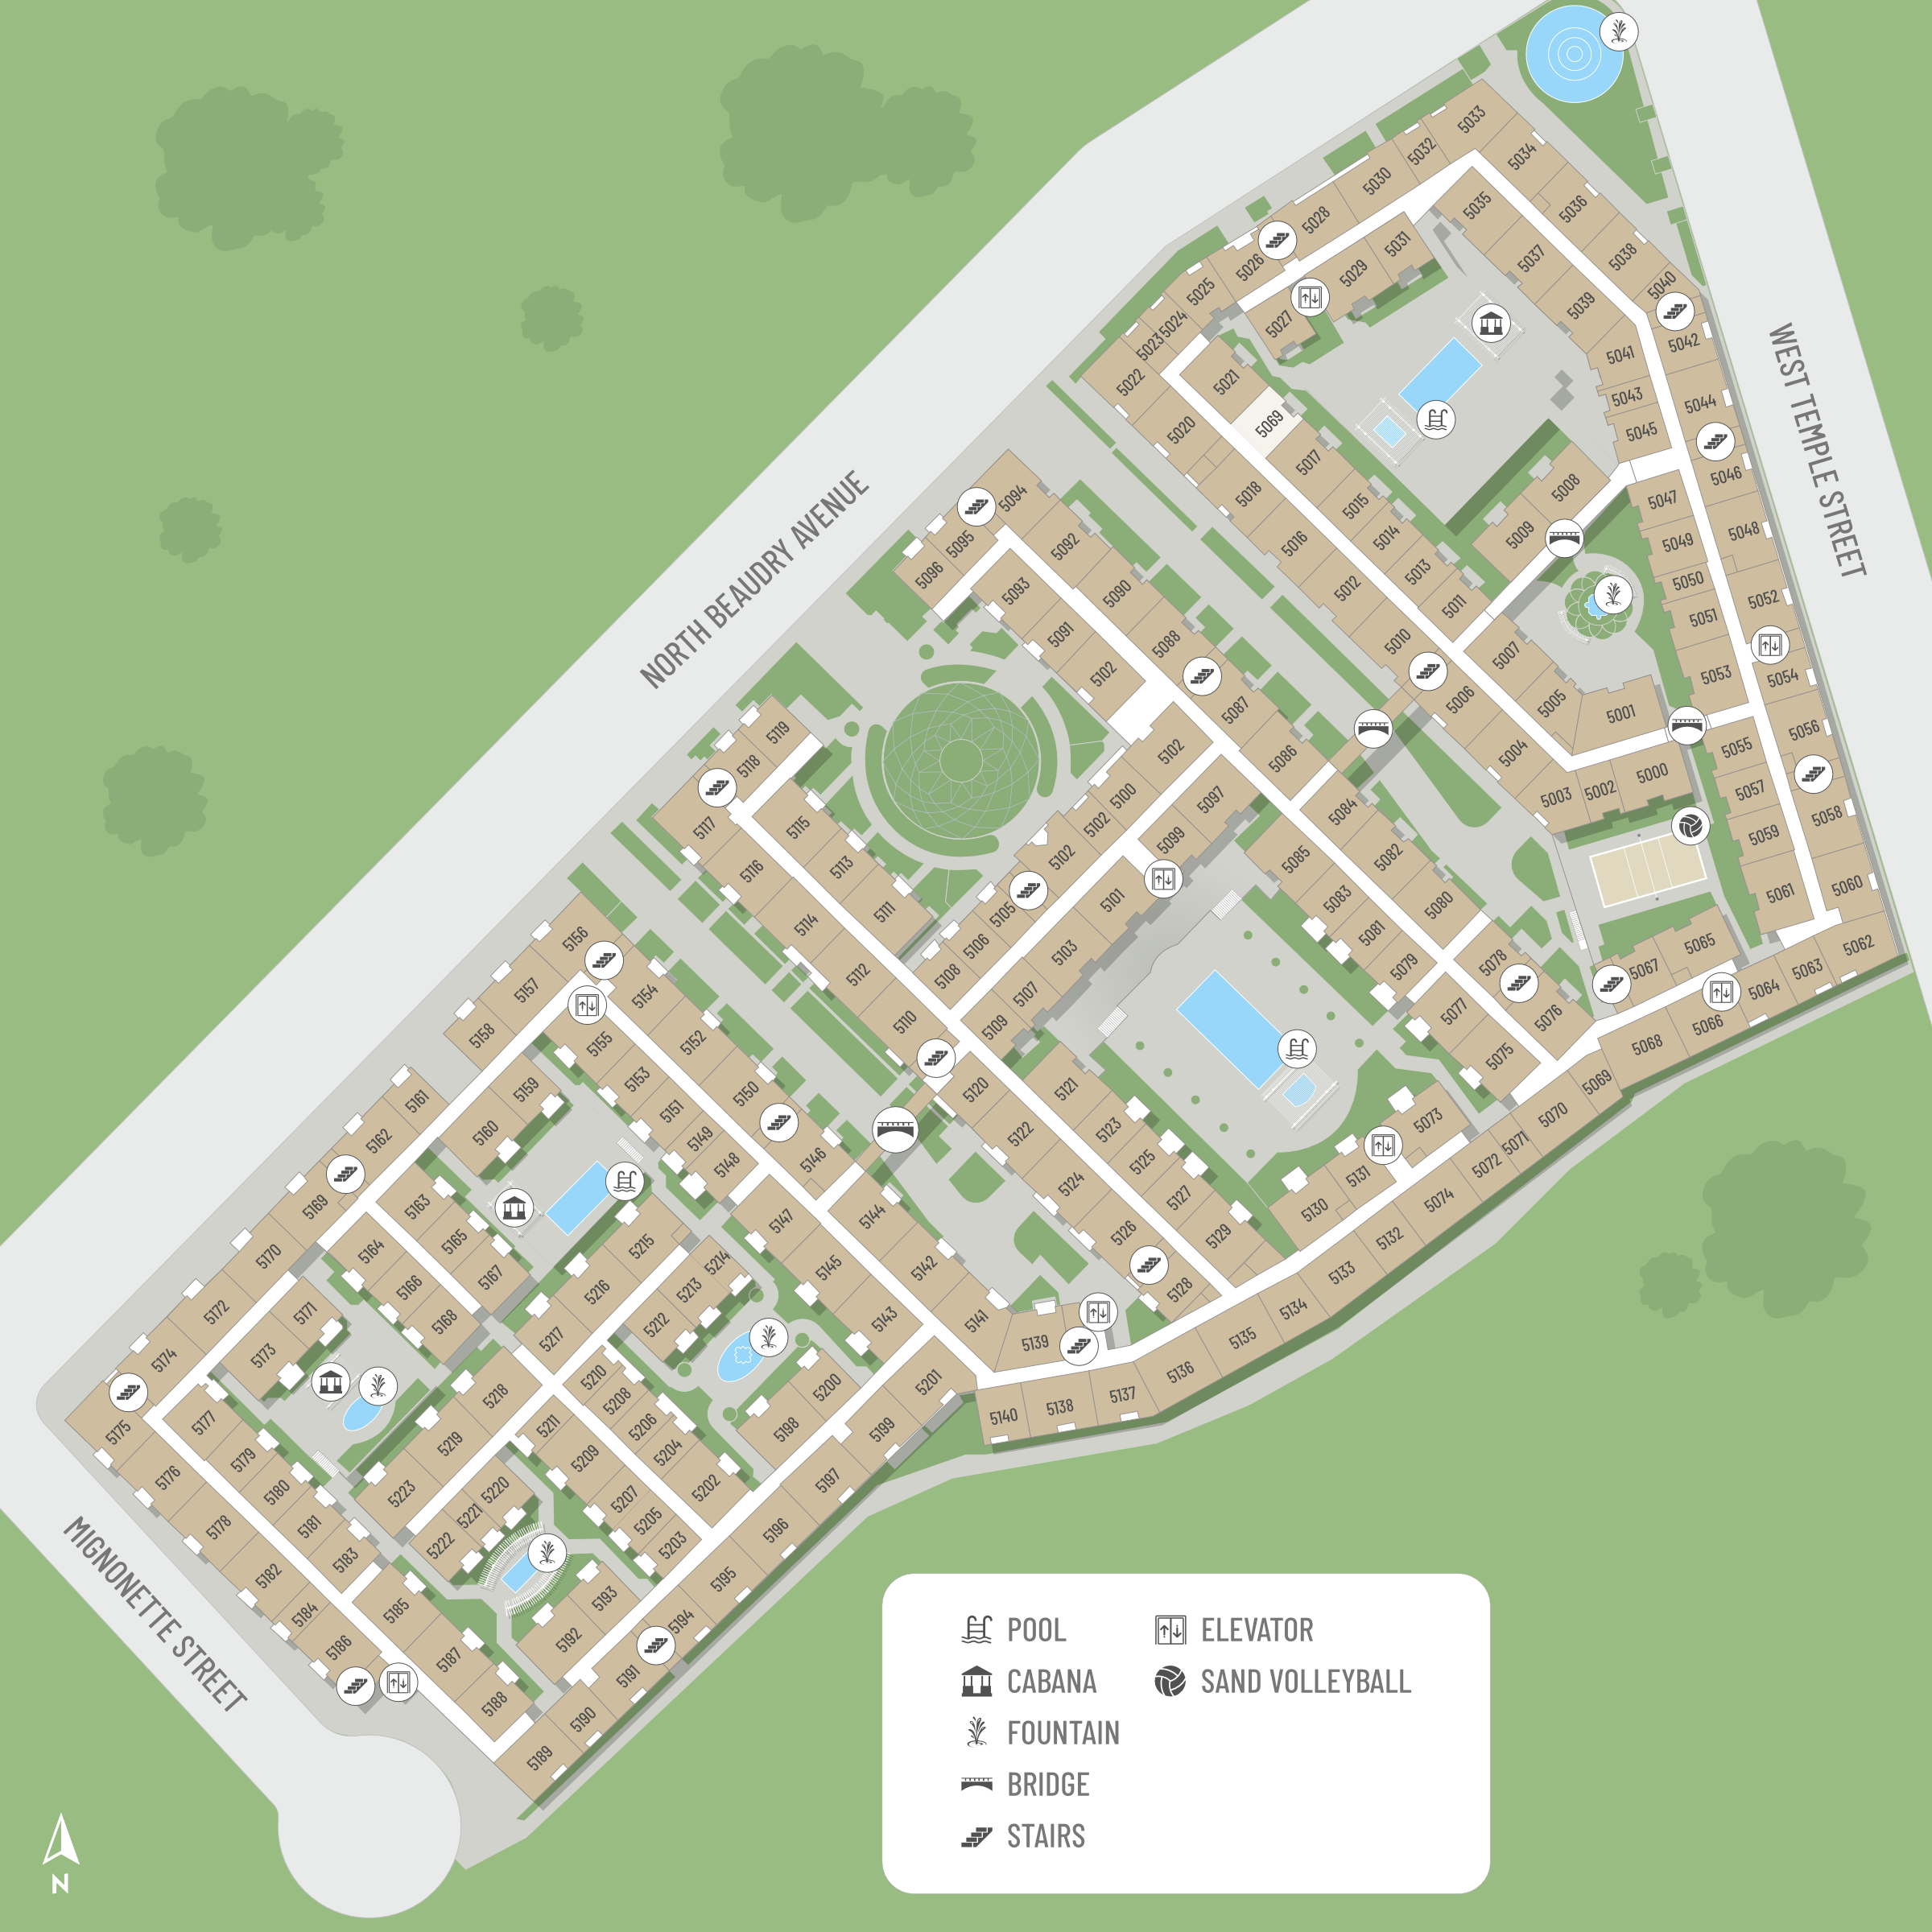 Ferrante - Site Map